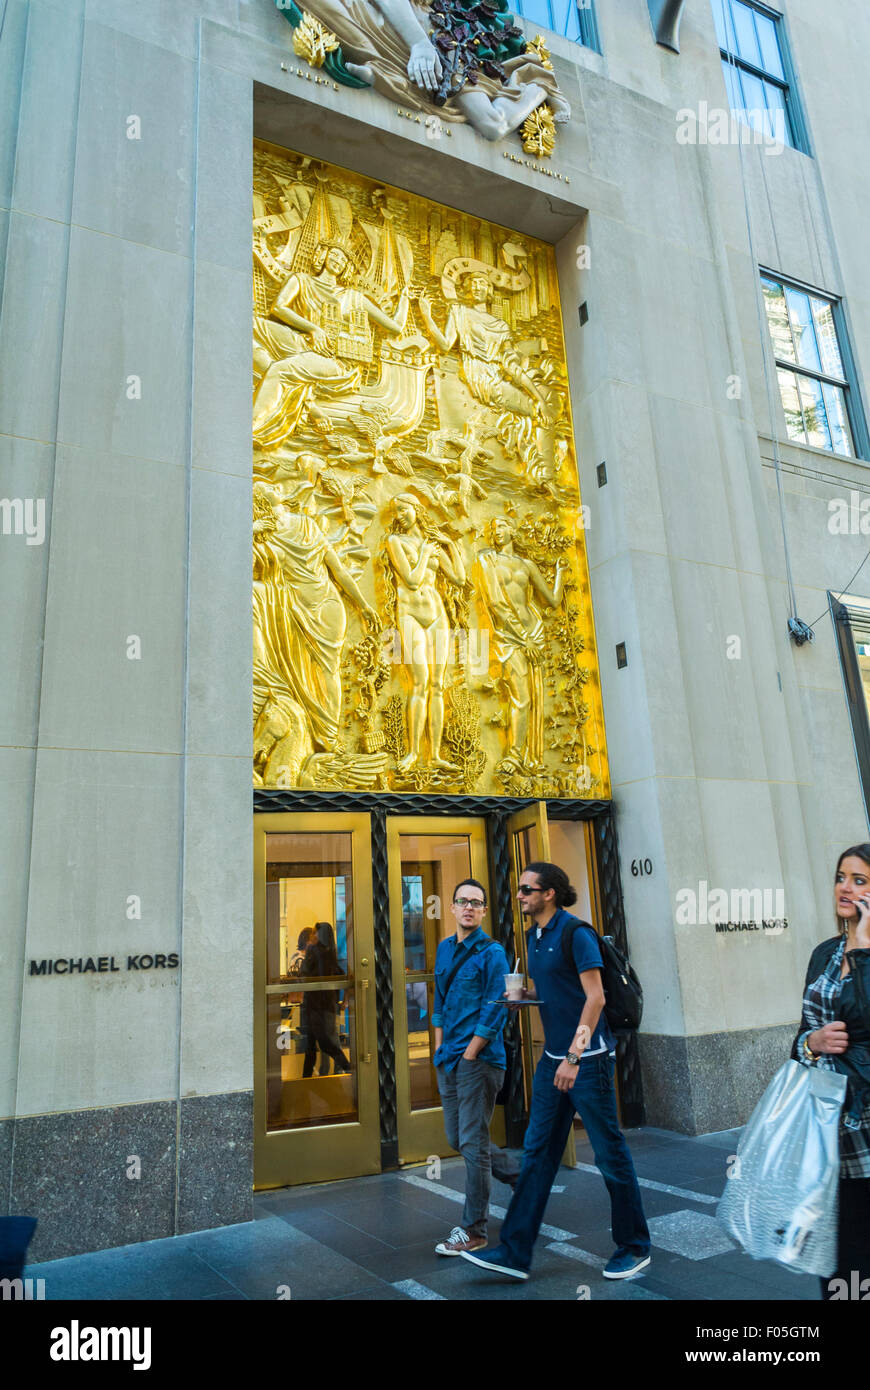 La città di New York, Stati Uniti d'America, scene di strada shopping sulla Quinta Avenue, Luxury brand della moda, Michael Kors Store, Rockefeller Center Foto Stock